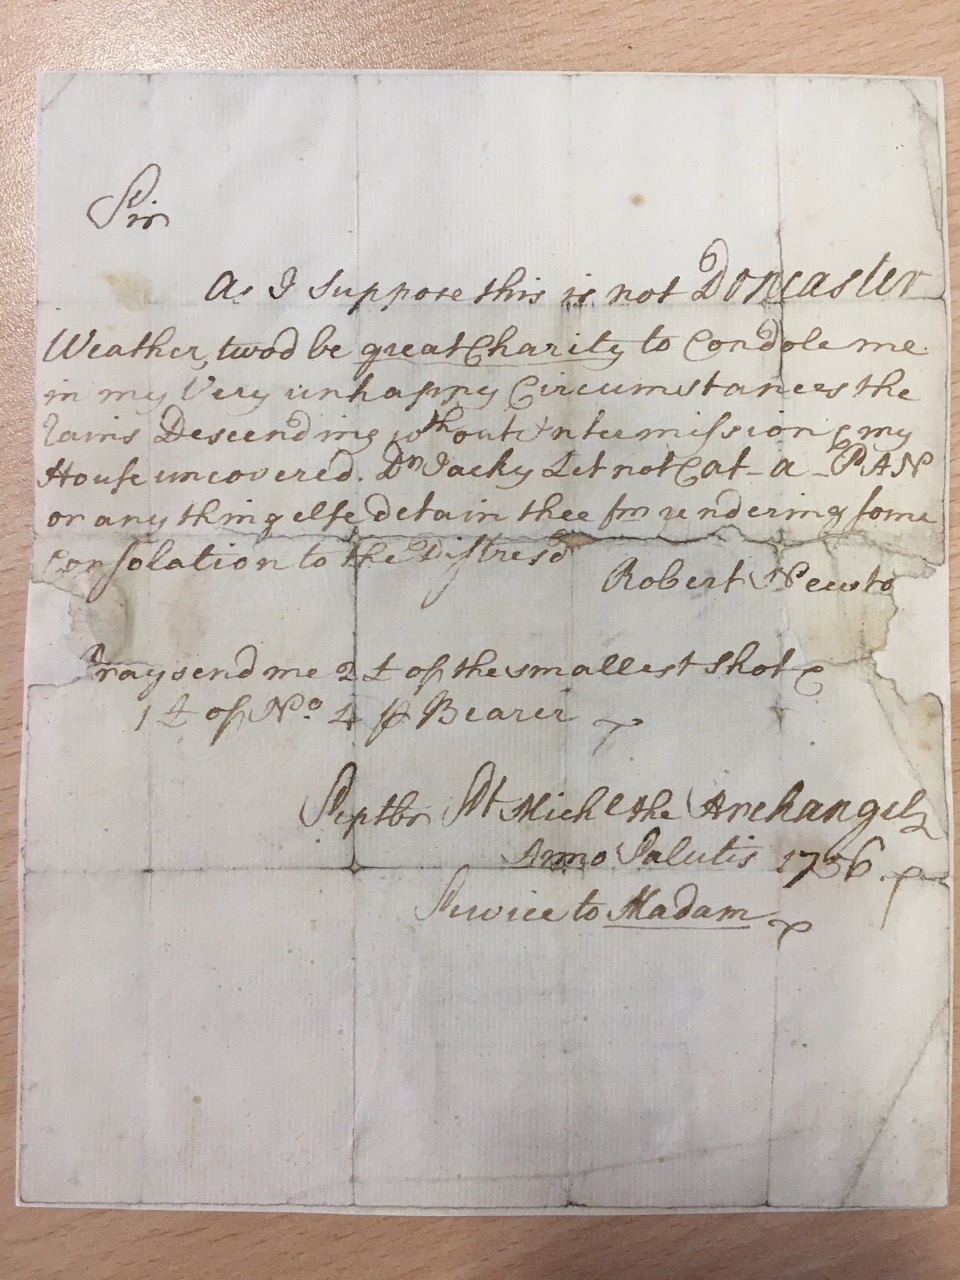 Image #1 of letter: Robert Newton to John Girdler, {?29 September} 1756